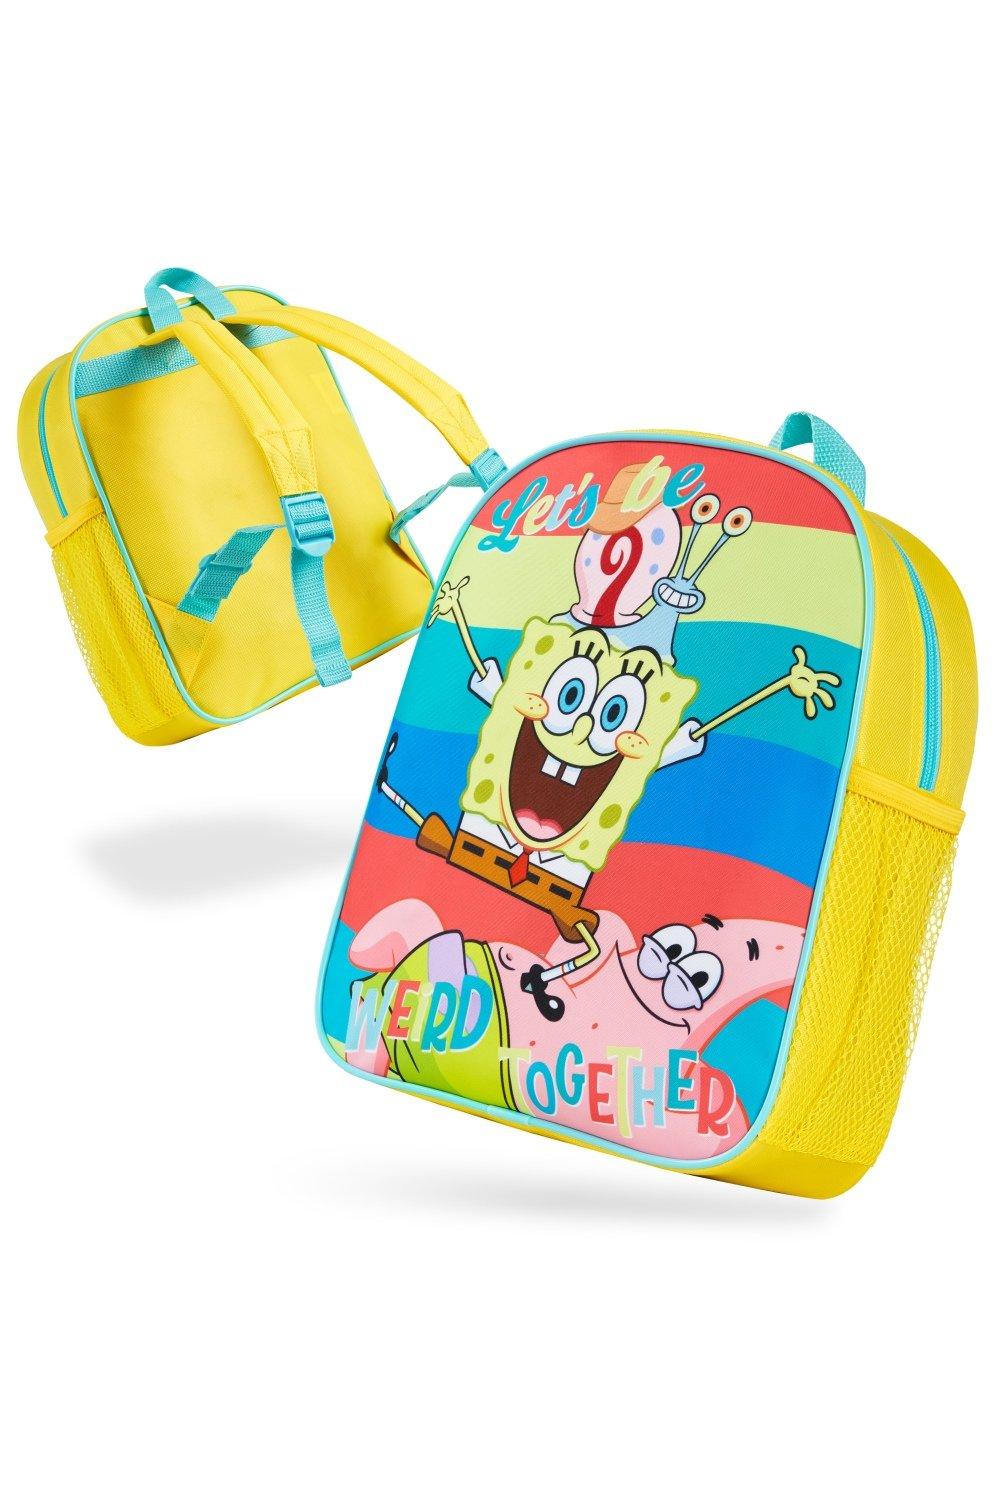 Детский рюкзак «Губка Боб Квадратные Штаны» SpongeBob SquarePants, мультиколор толстовка губка боб spongebob 31